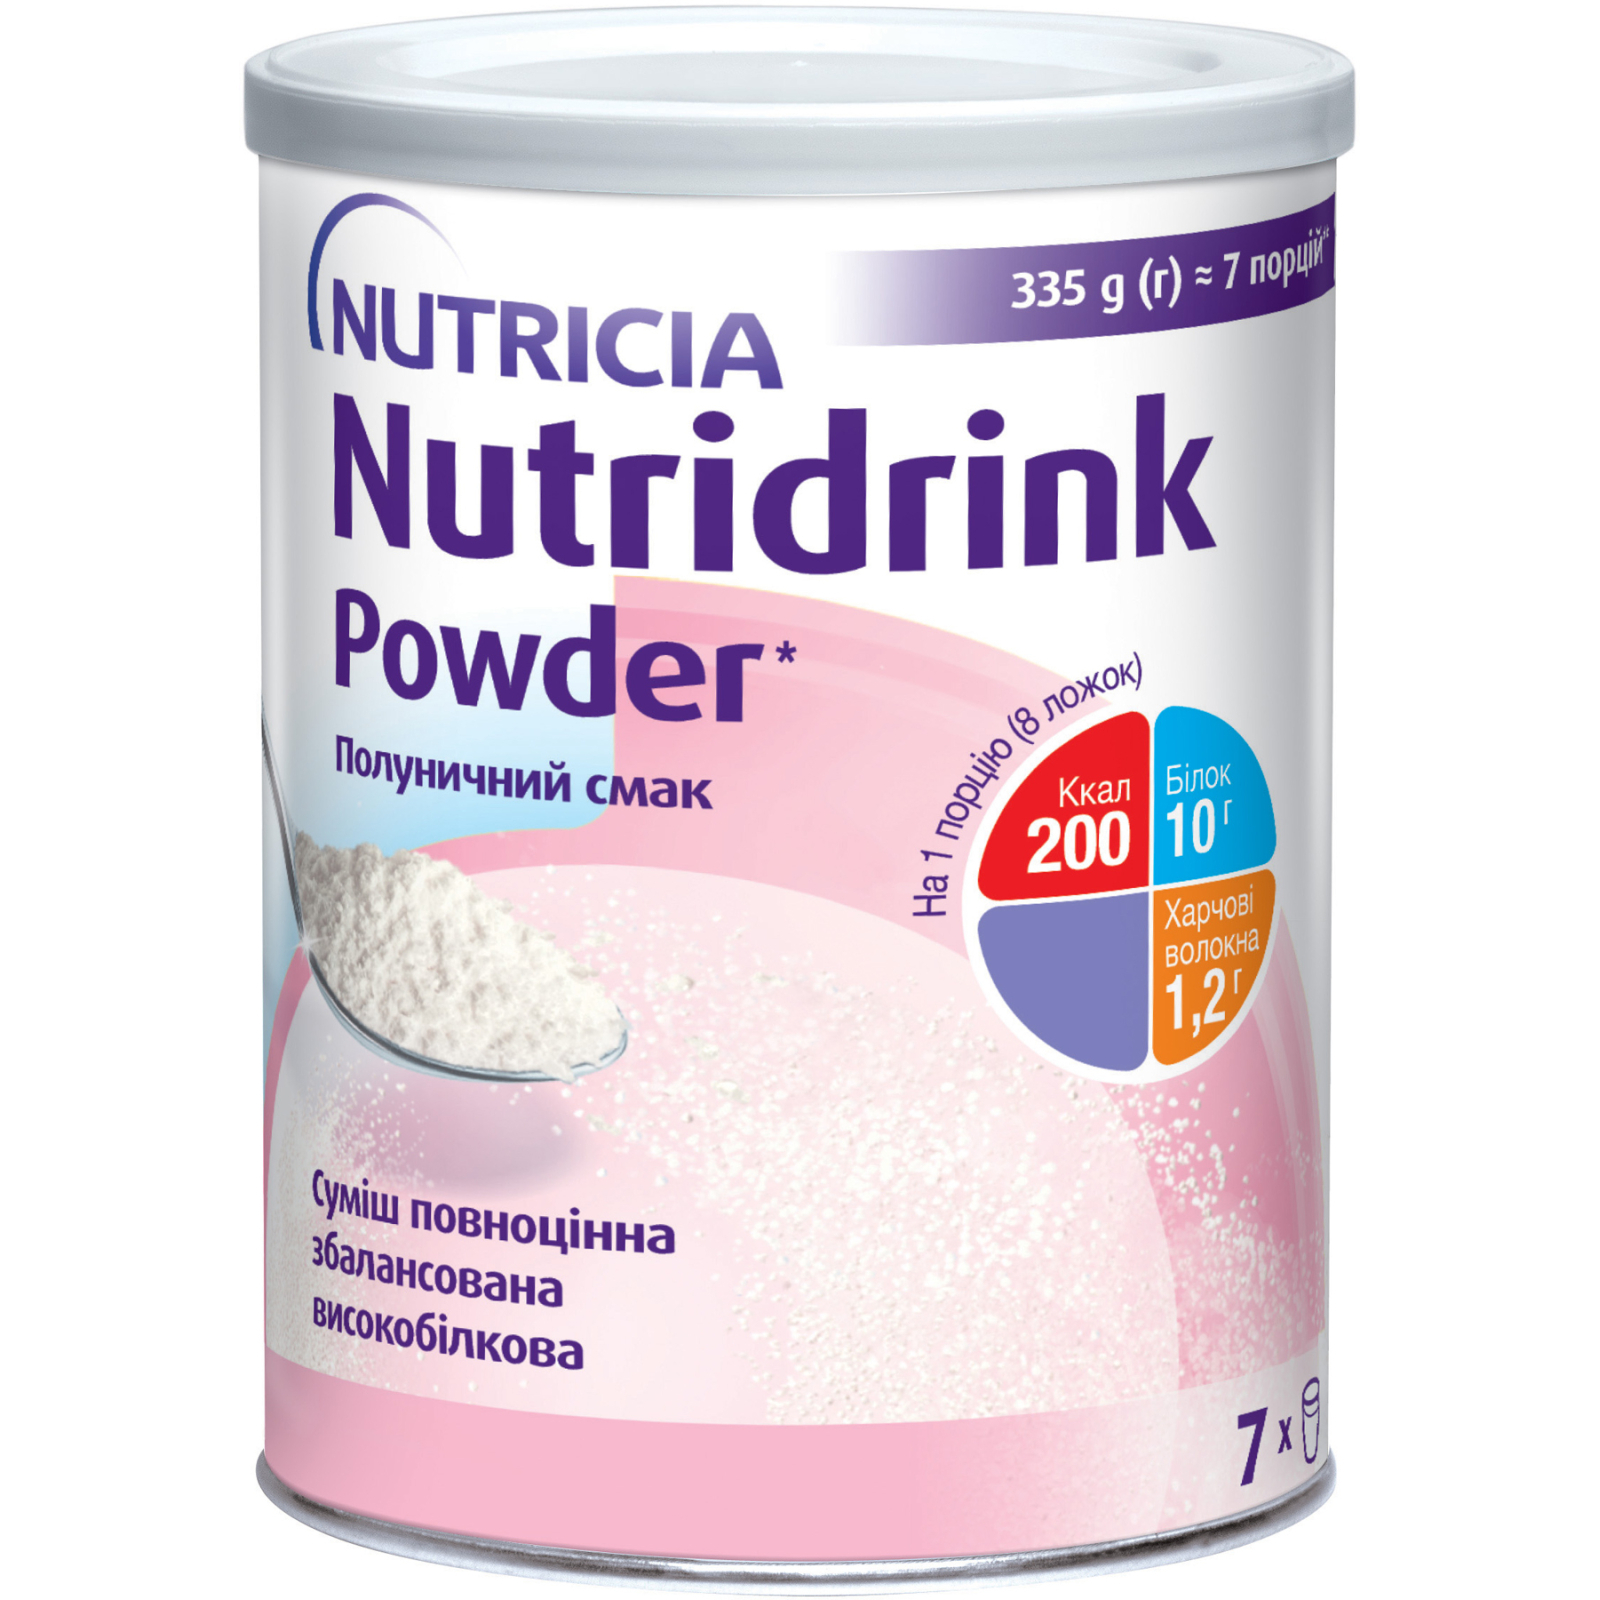 Ентеральне харчування Nutricia Nutridrink Powder Strawberry з високим вмістом білка та енергії 335 г (4008976681694)